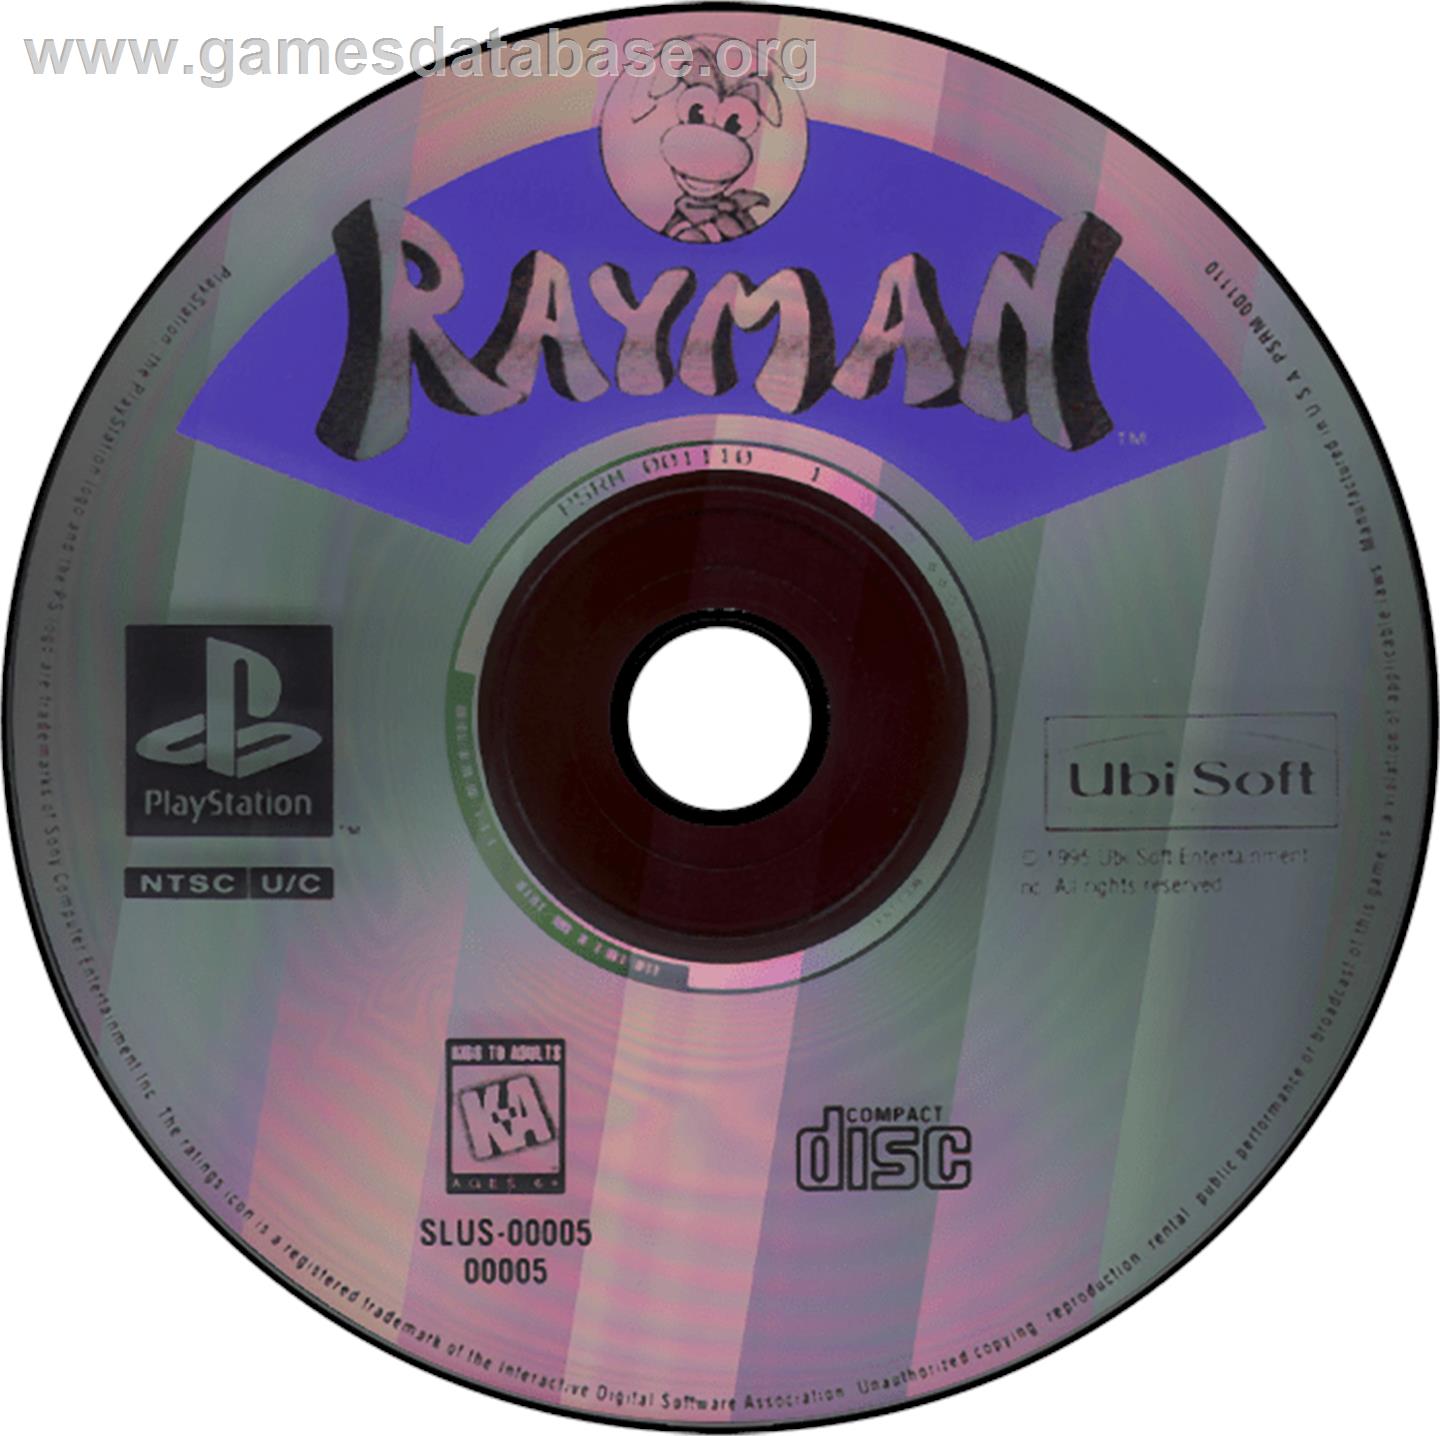 Rayman - Sony Playstation - Artwork - Disc